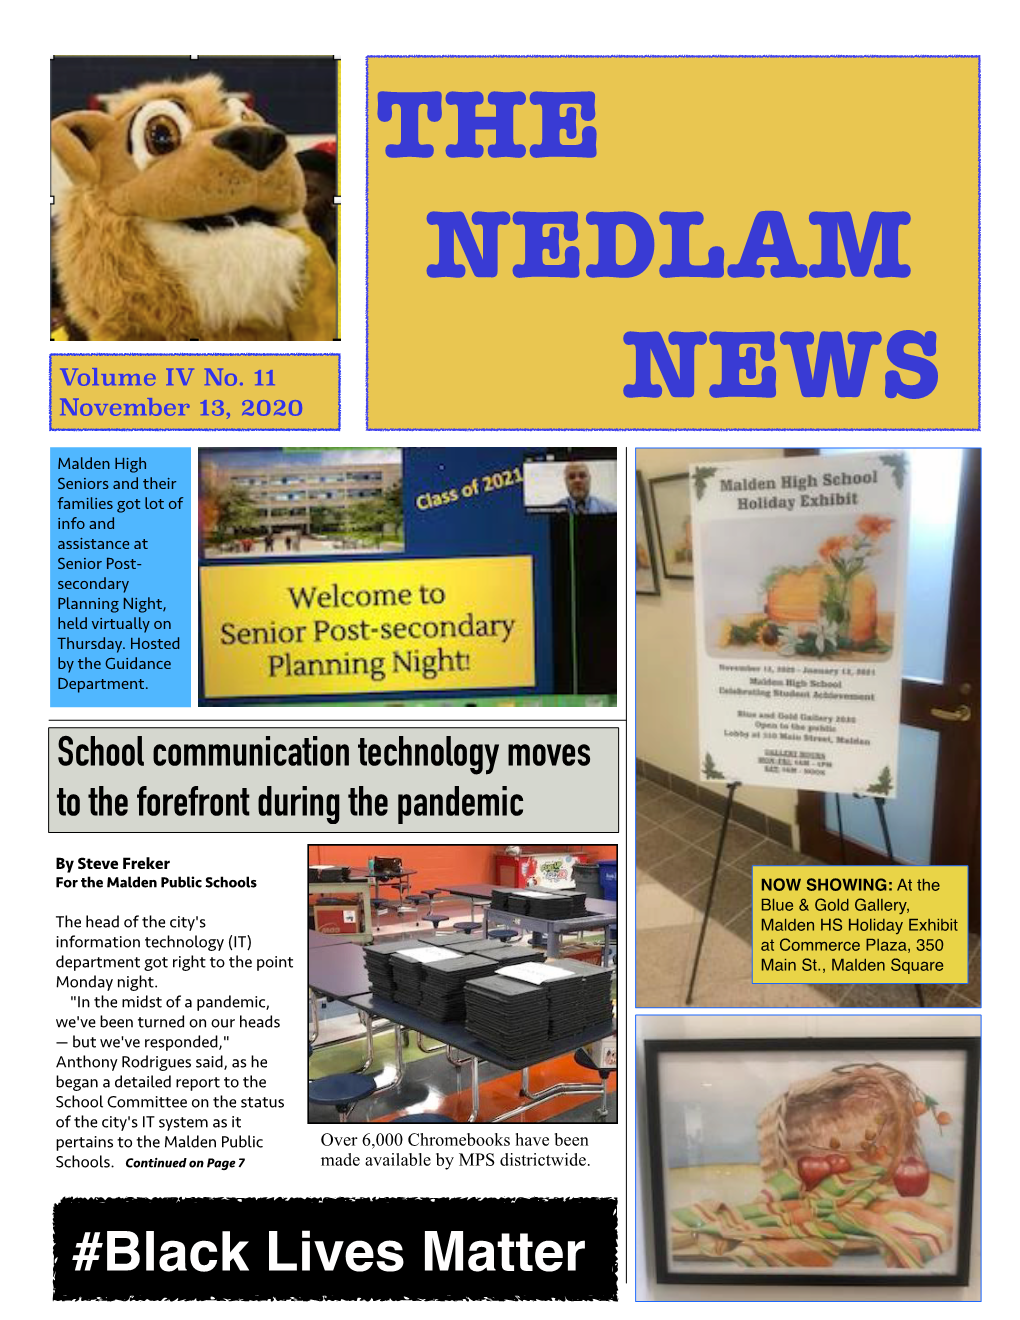 NEDLAM NEWS Vol IV No. 11 November